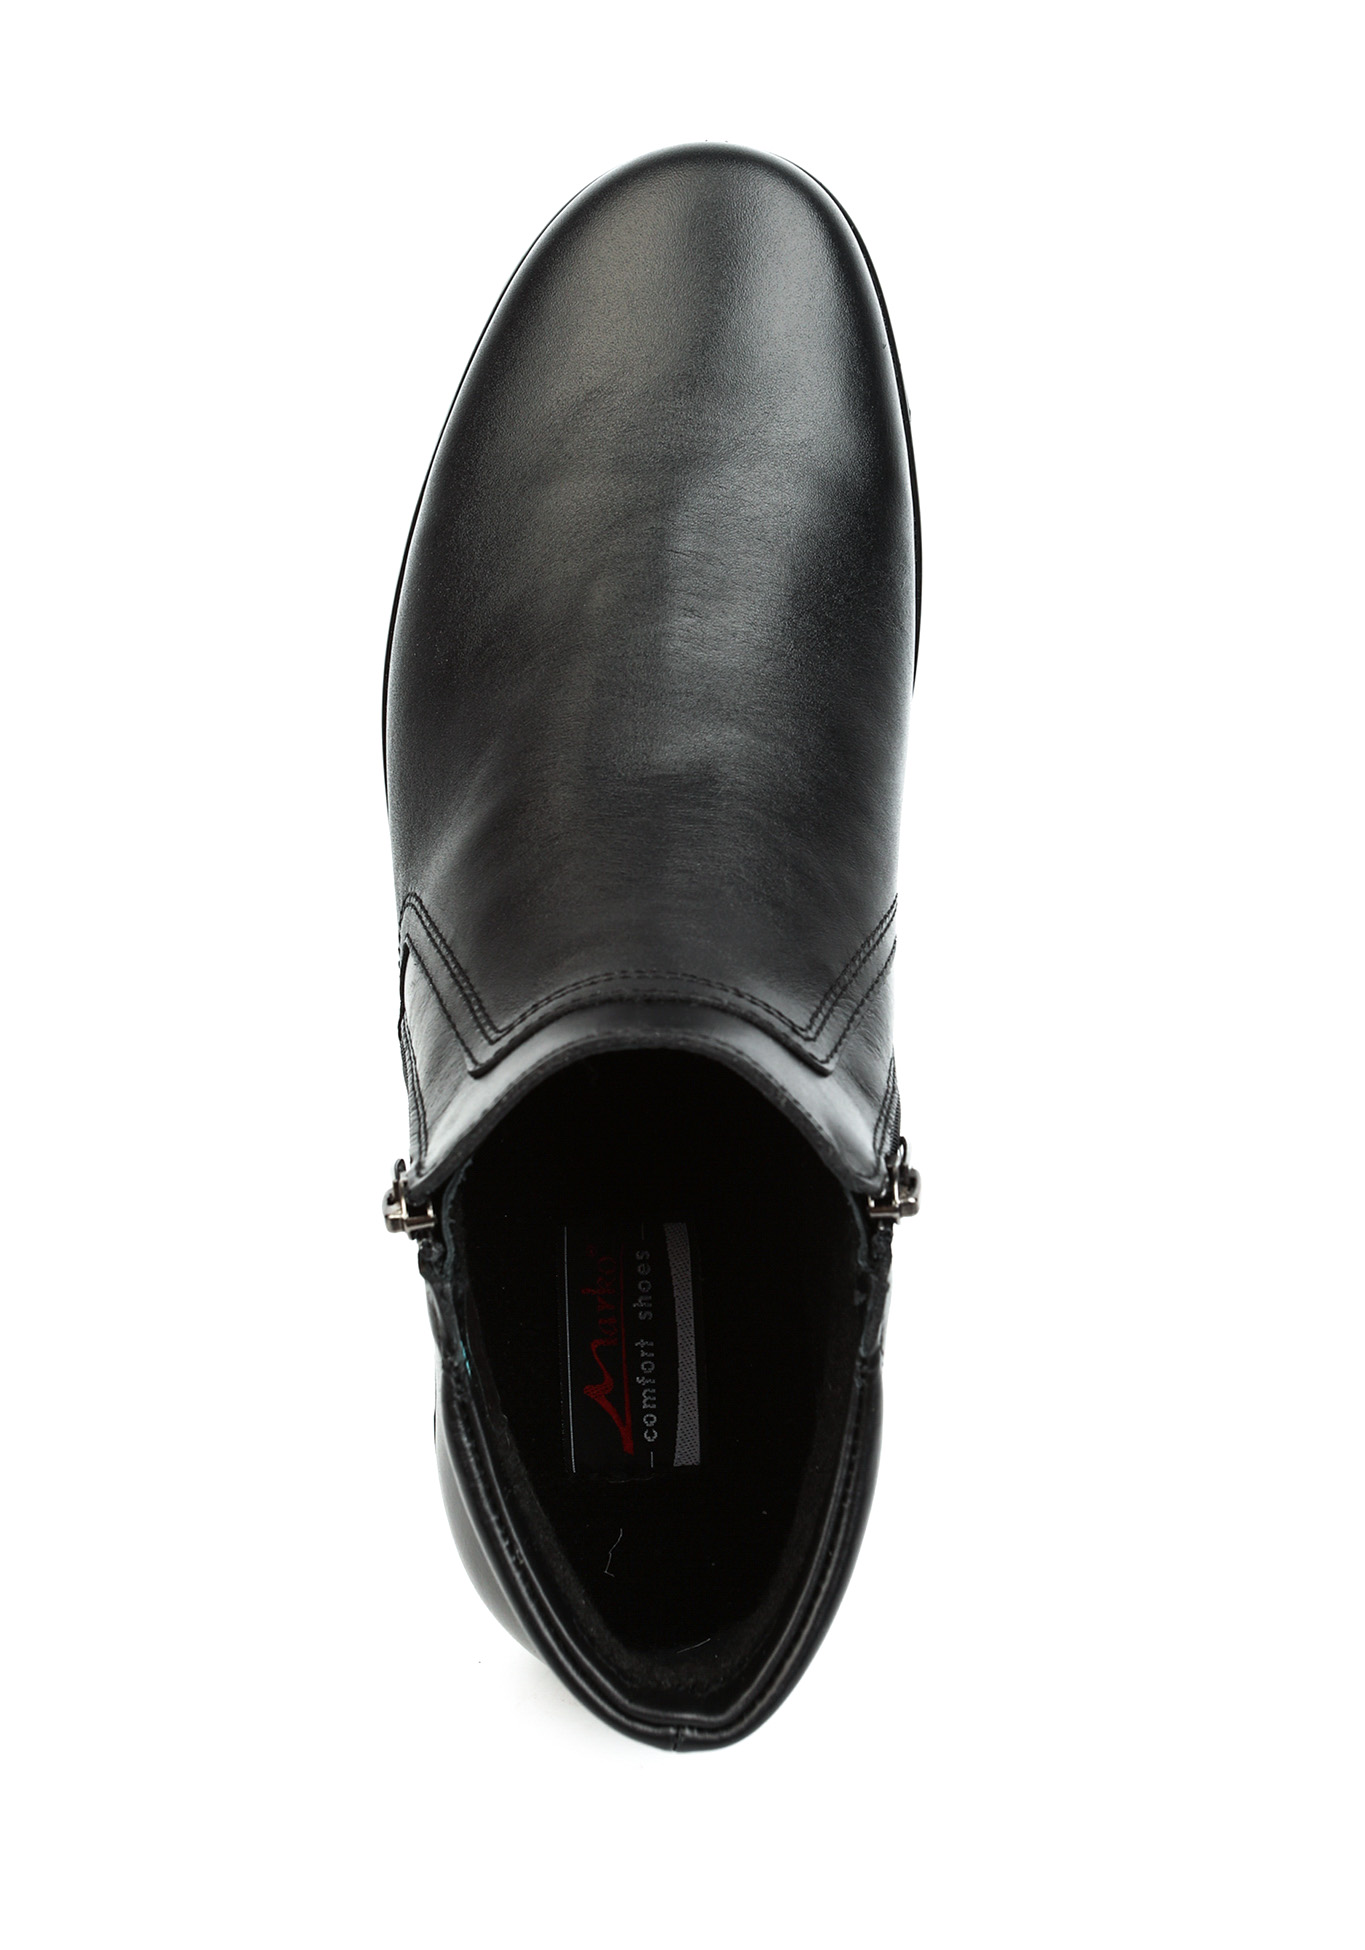 Ботинки мужские "Стеффан" Marko, размер 40, цвет черный - фото 4